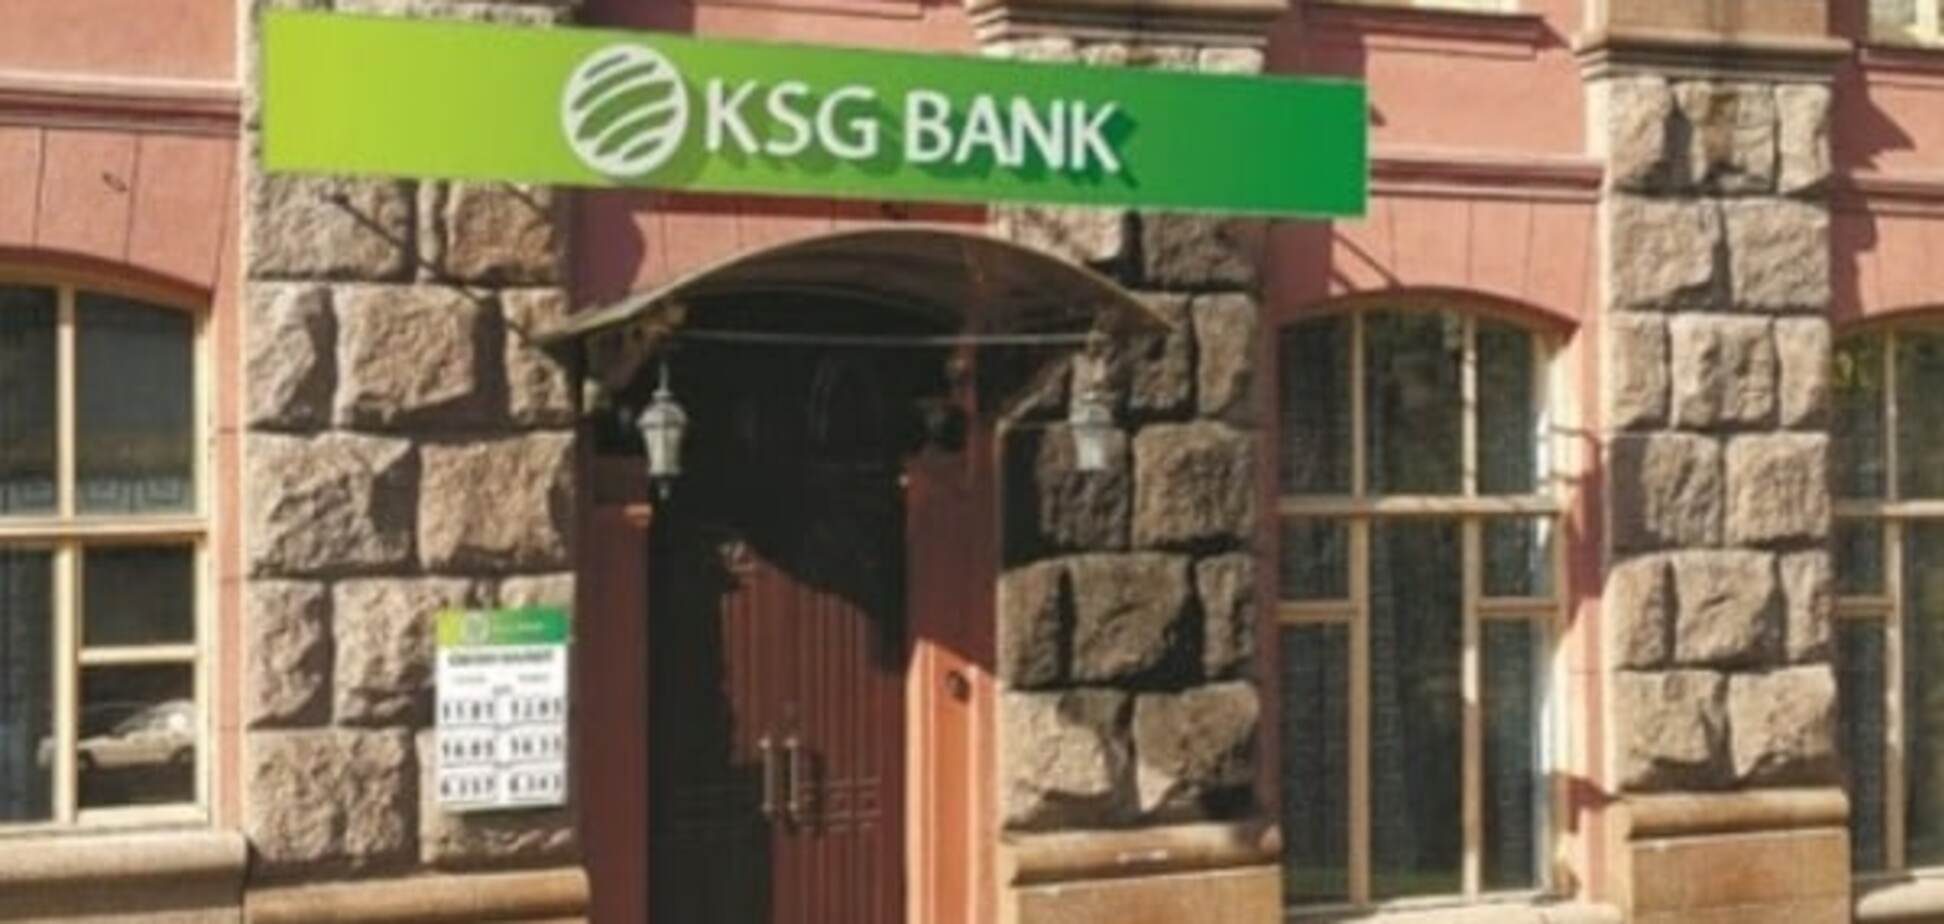 В КСГ Банке связали отзыв лицензии НБУ с рейдерской атакой